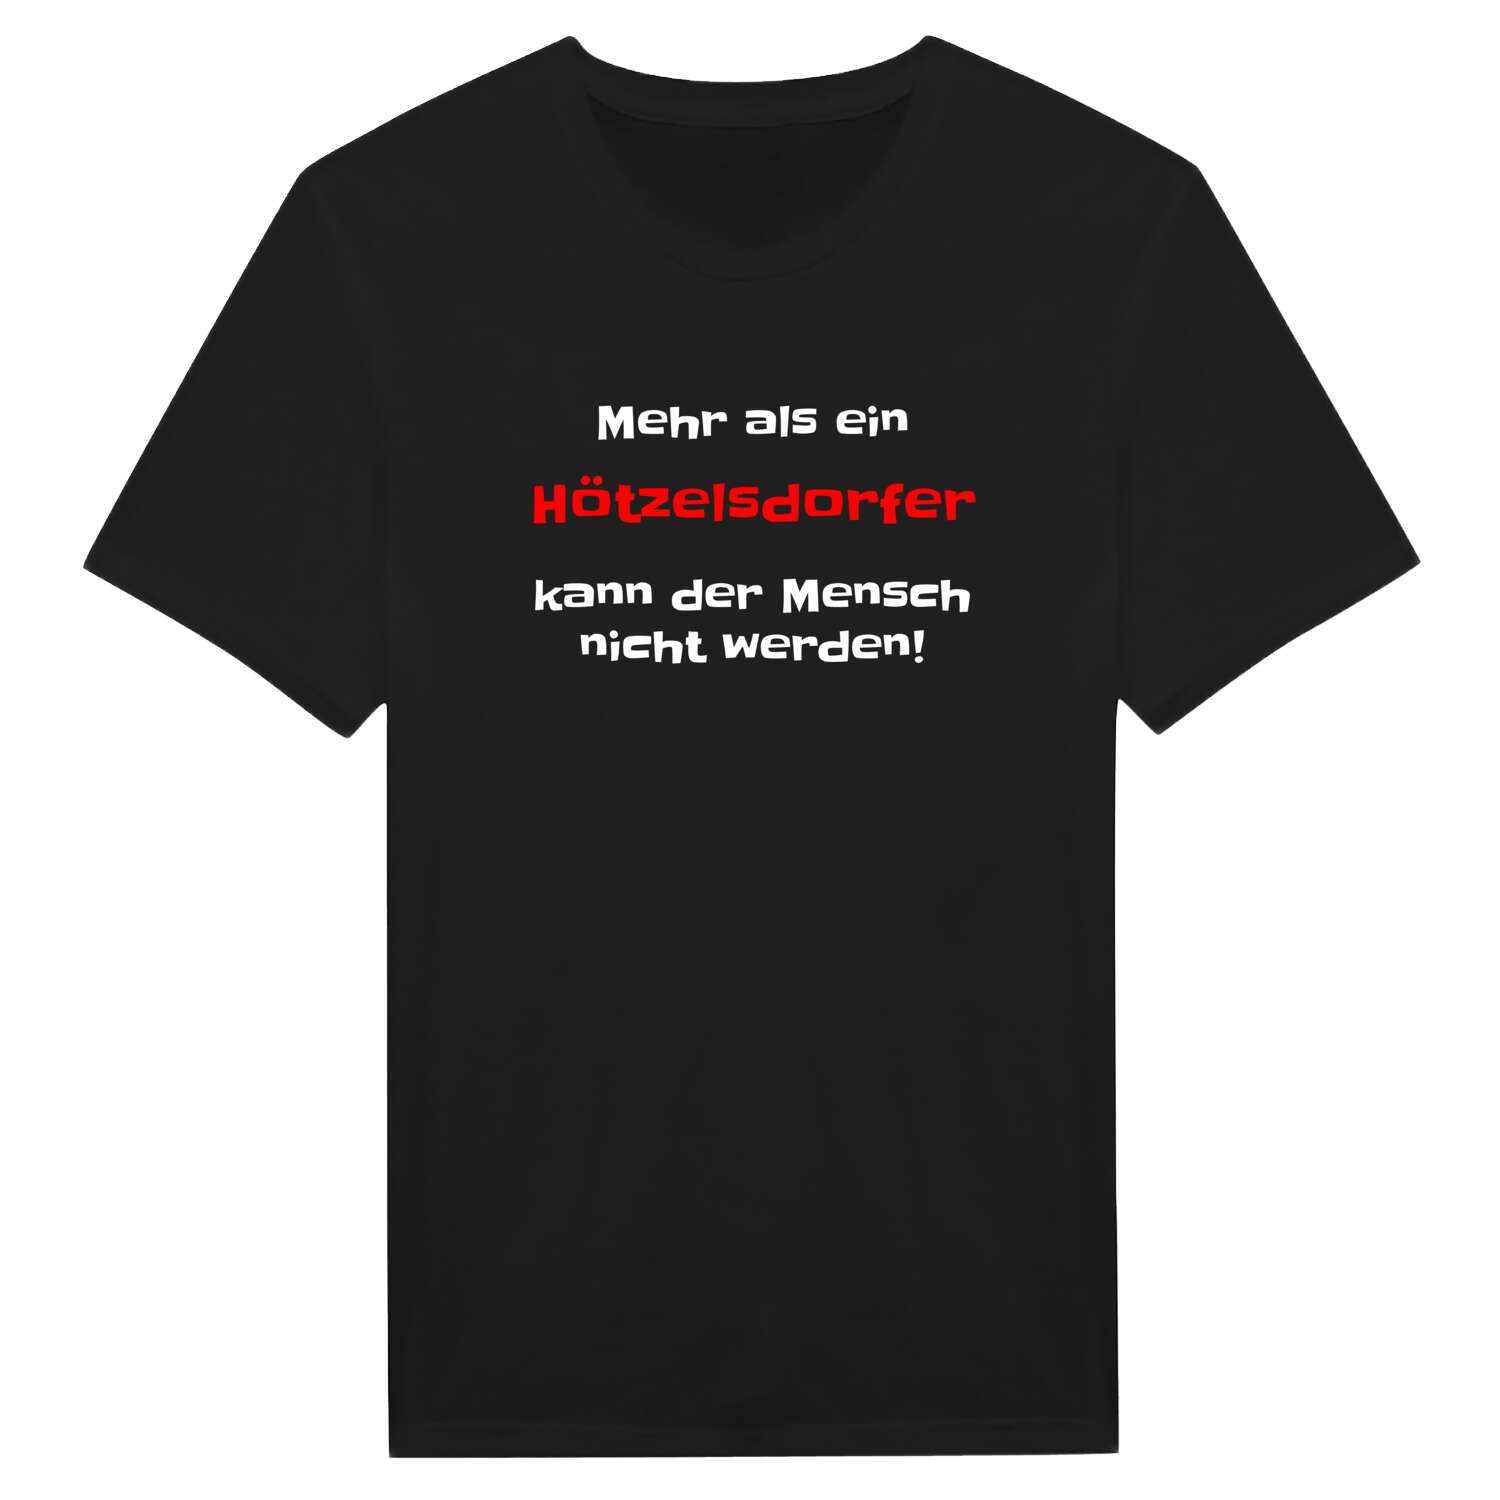 Hötzelsdorf T-Shirt »Mehr als ein«